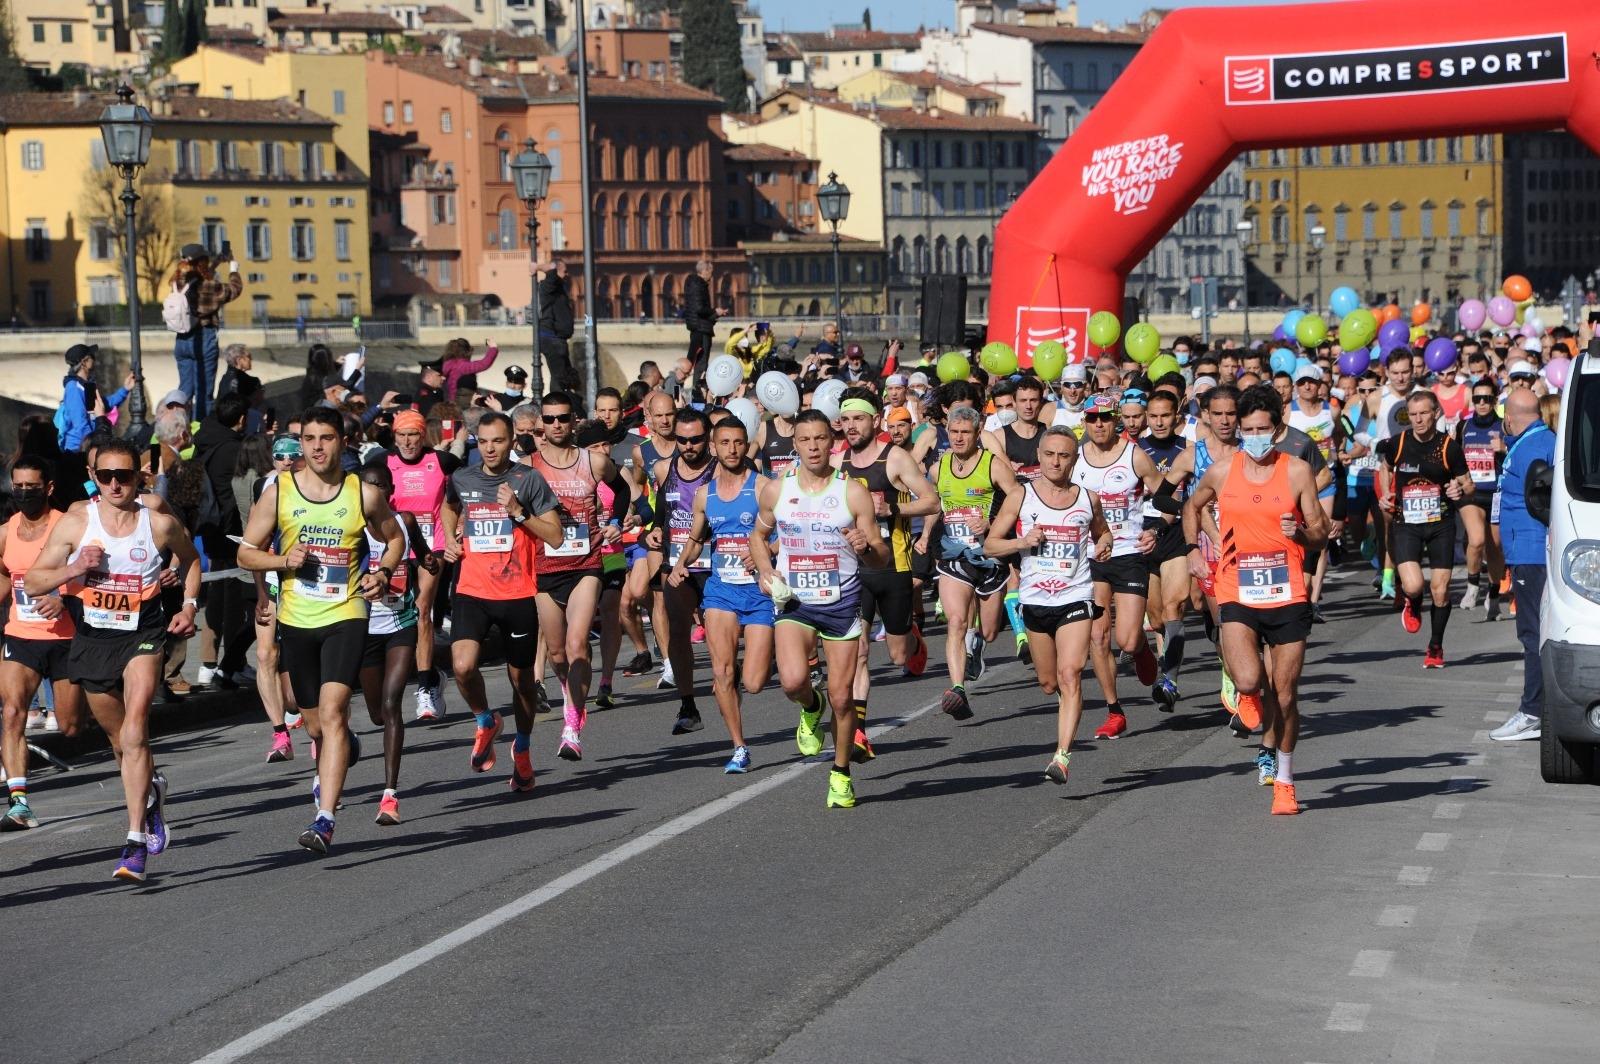 Firenze Half Marathon, iniziative speciali per l'edizione 40